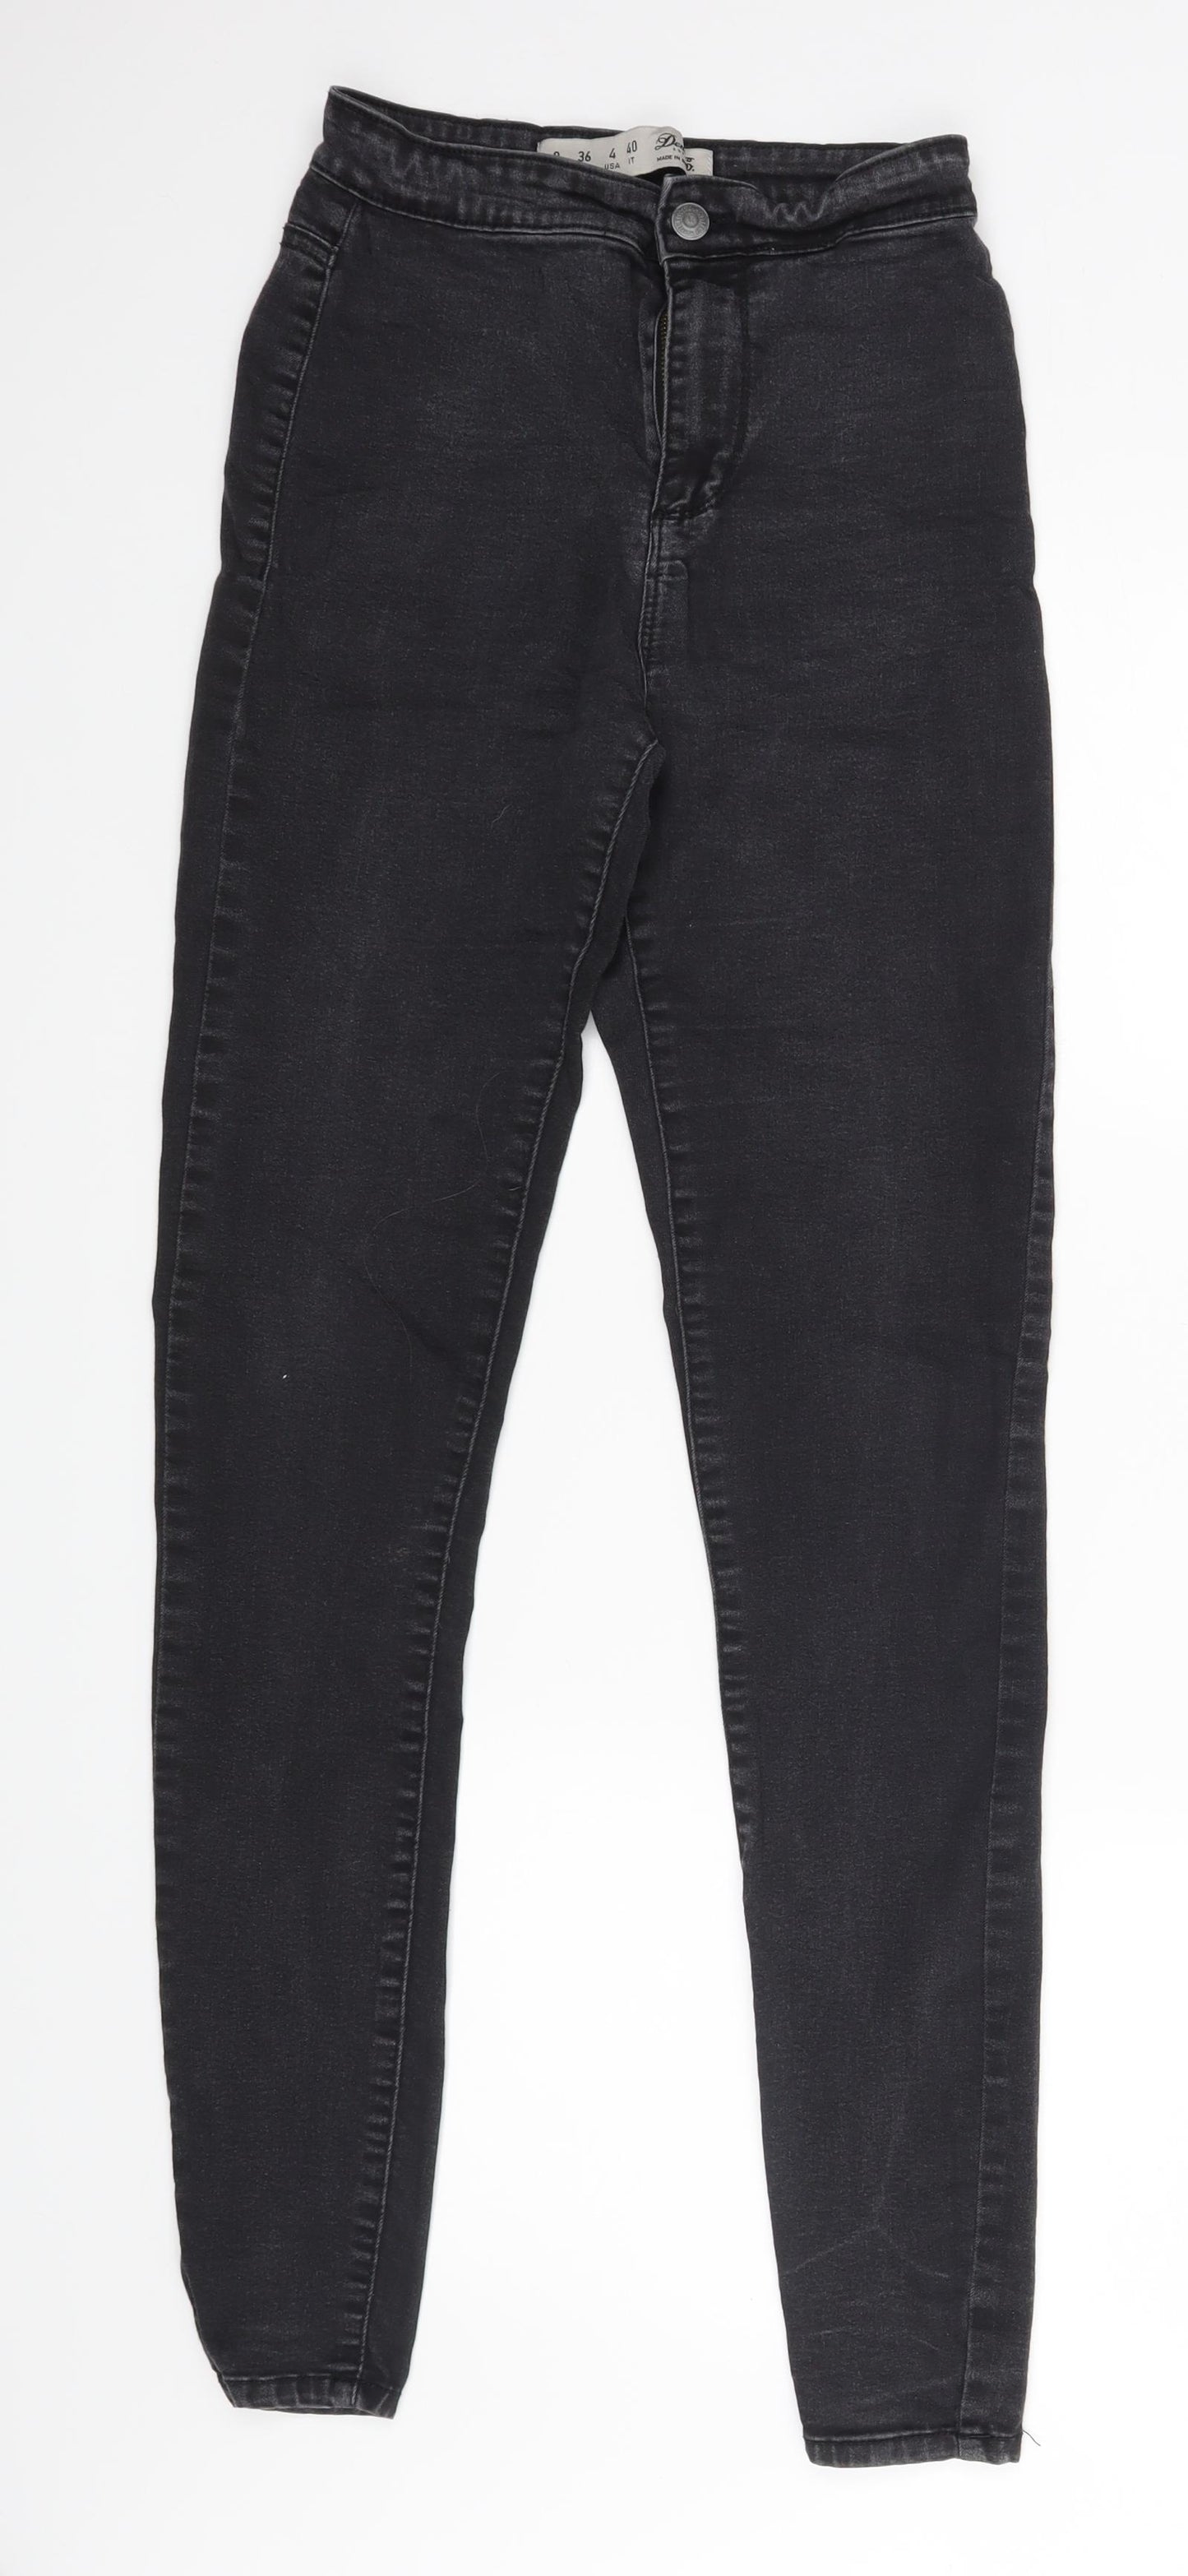 Denim & Co. Womens Black   Skinny Jeans Size 8 L29 in